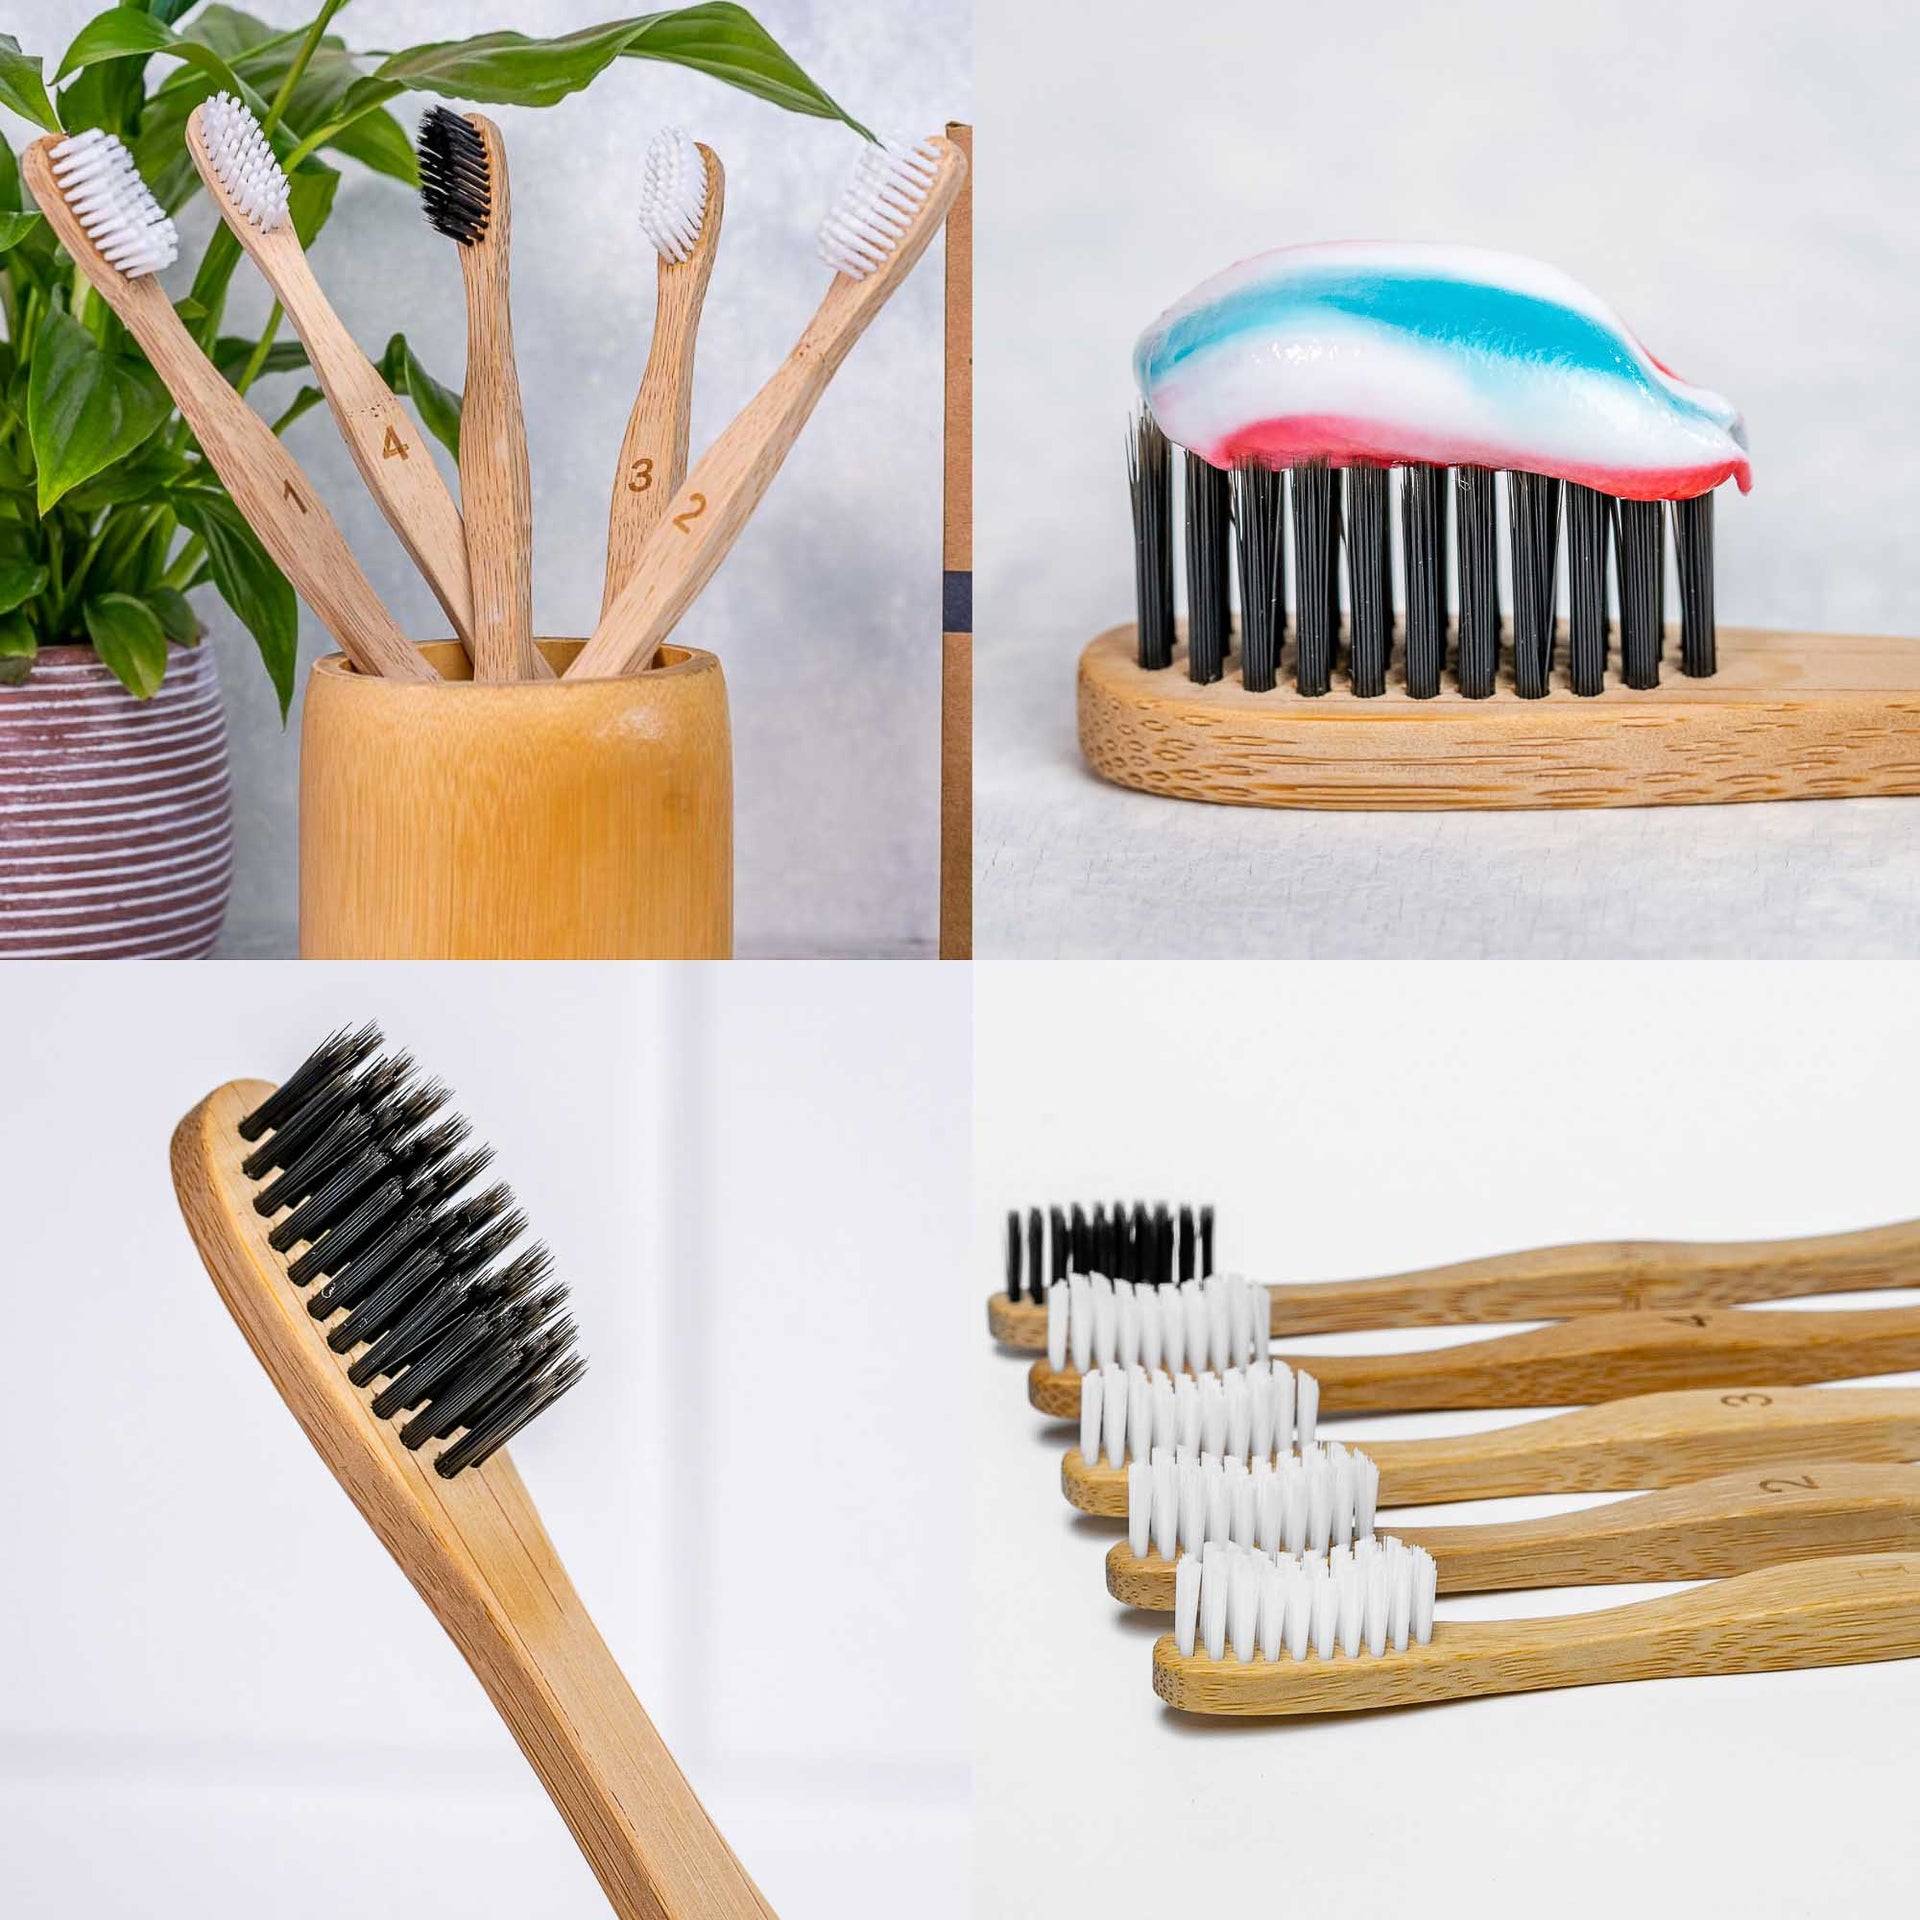 Bamboo Toothbrush Set 5-Pack - Bamboo Toothbrushes Medium Bristles - Mercantile Mountain